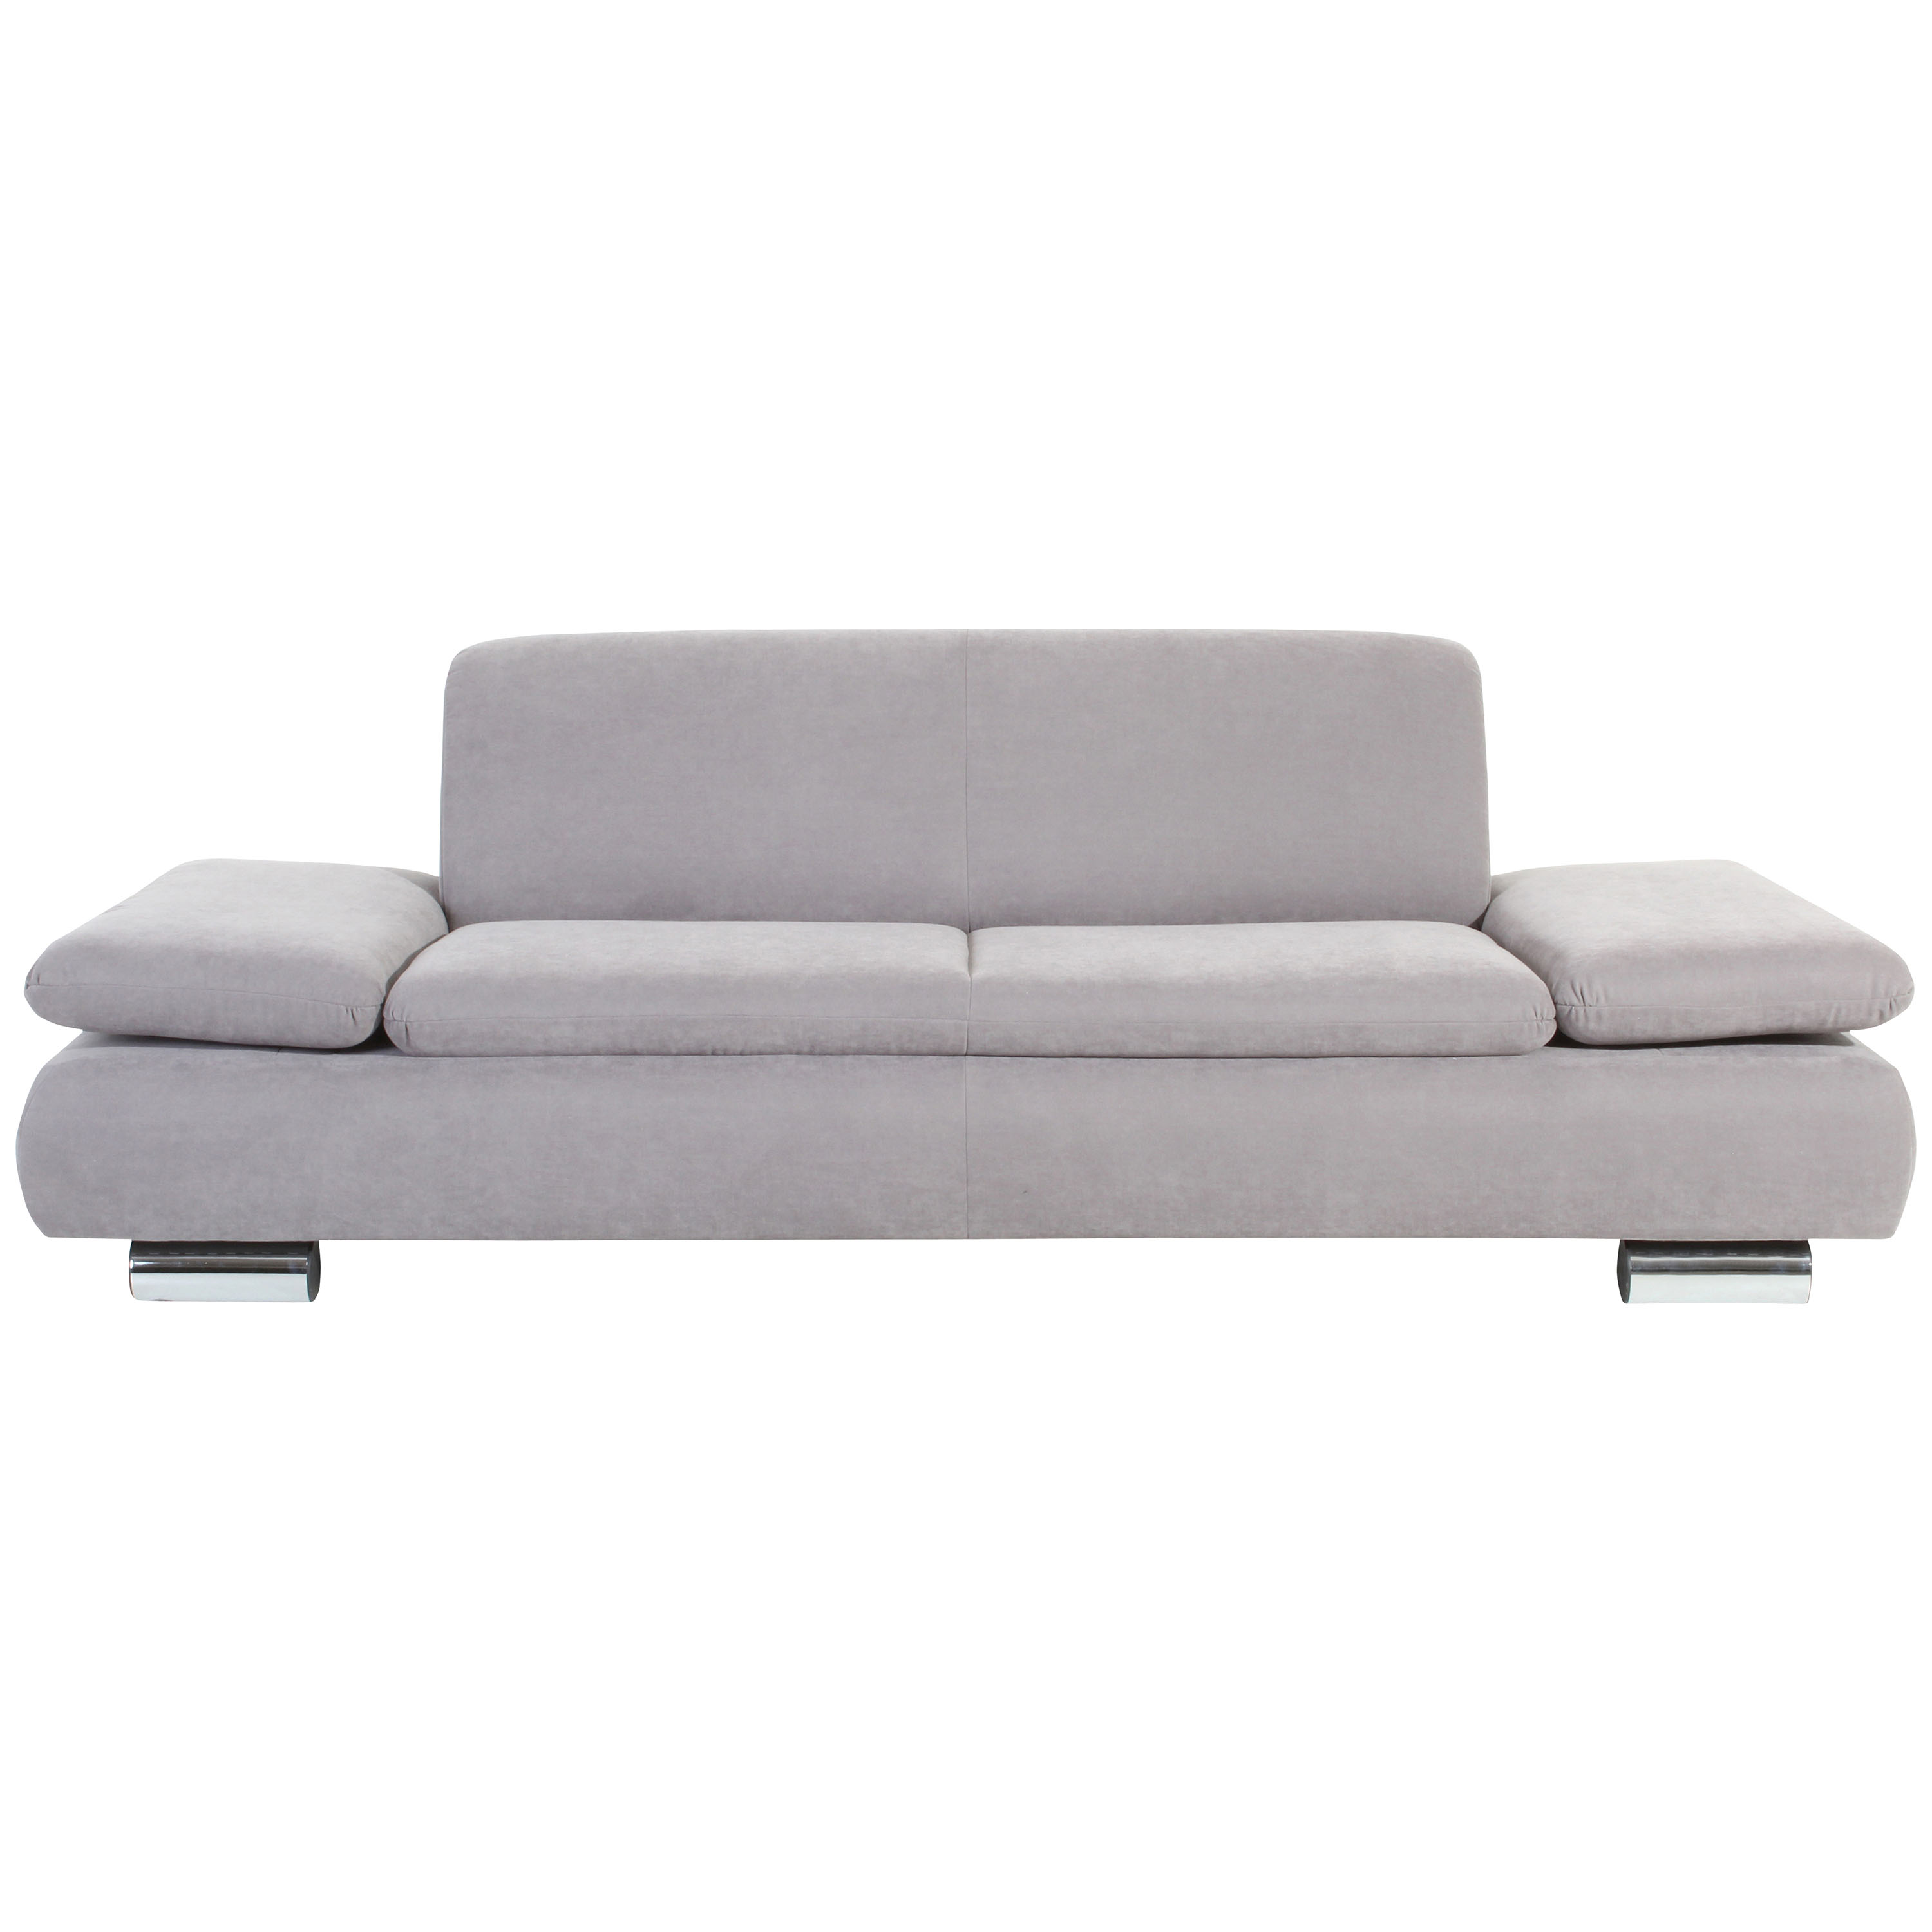 frontansicht von einem 2,5-sitzer sofa in silber mit verchromten metallfüssen